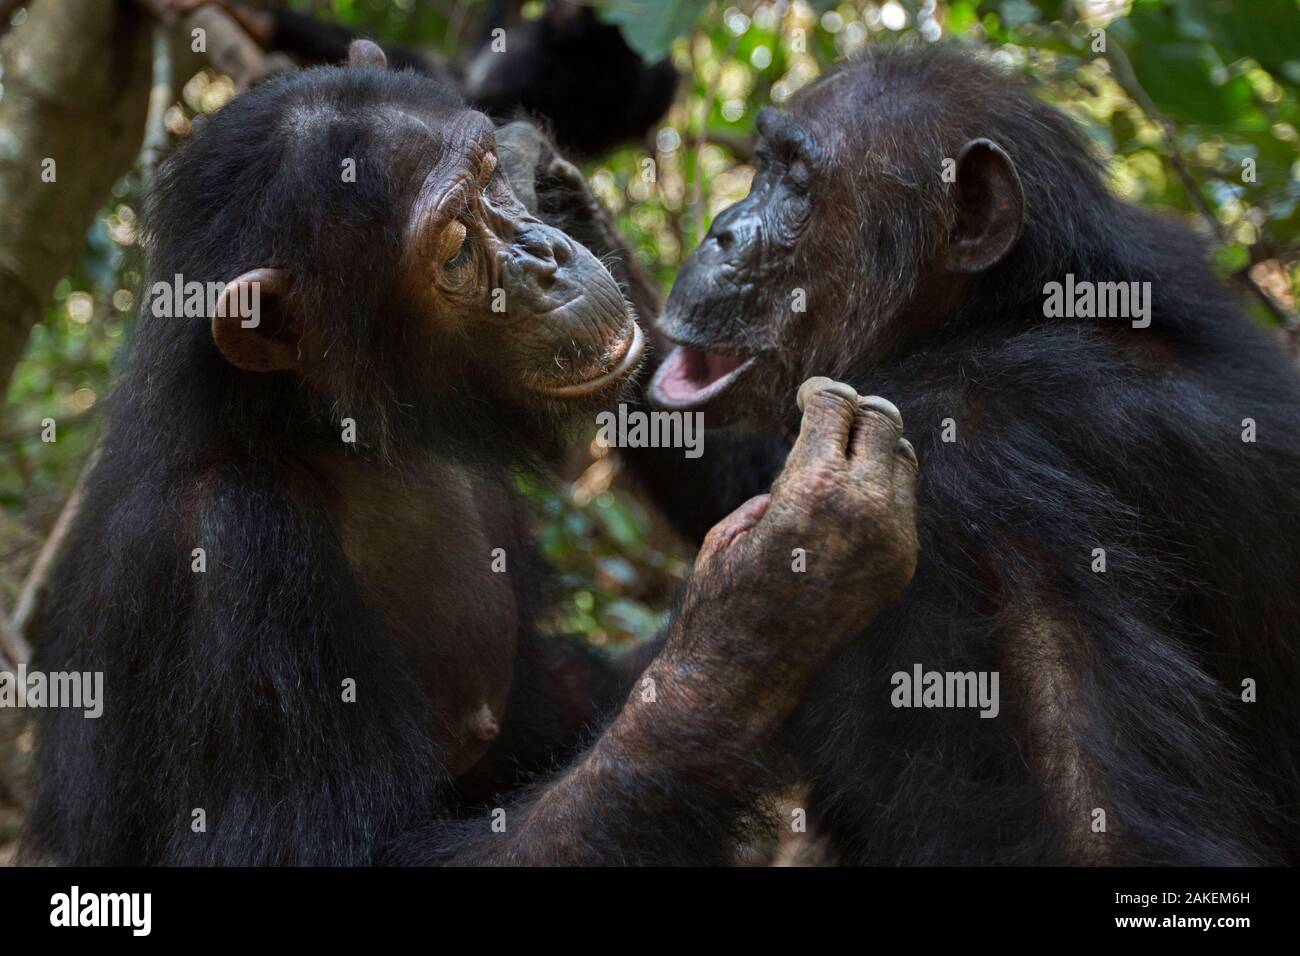 L'Est de chimpanzé (Pan troglodytes) schweinfurtheii «femme âgée de 42 ans' Gremlin étant entretenues par sa fille 'Golden' âgée de 15 ans.Le Parc National de Gombe, en Tanzanie. Septembre 2013. Banque D'Images